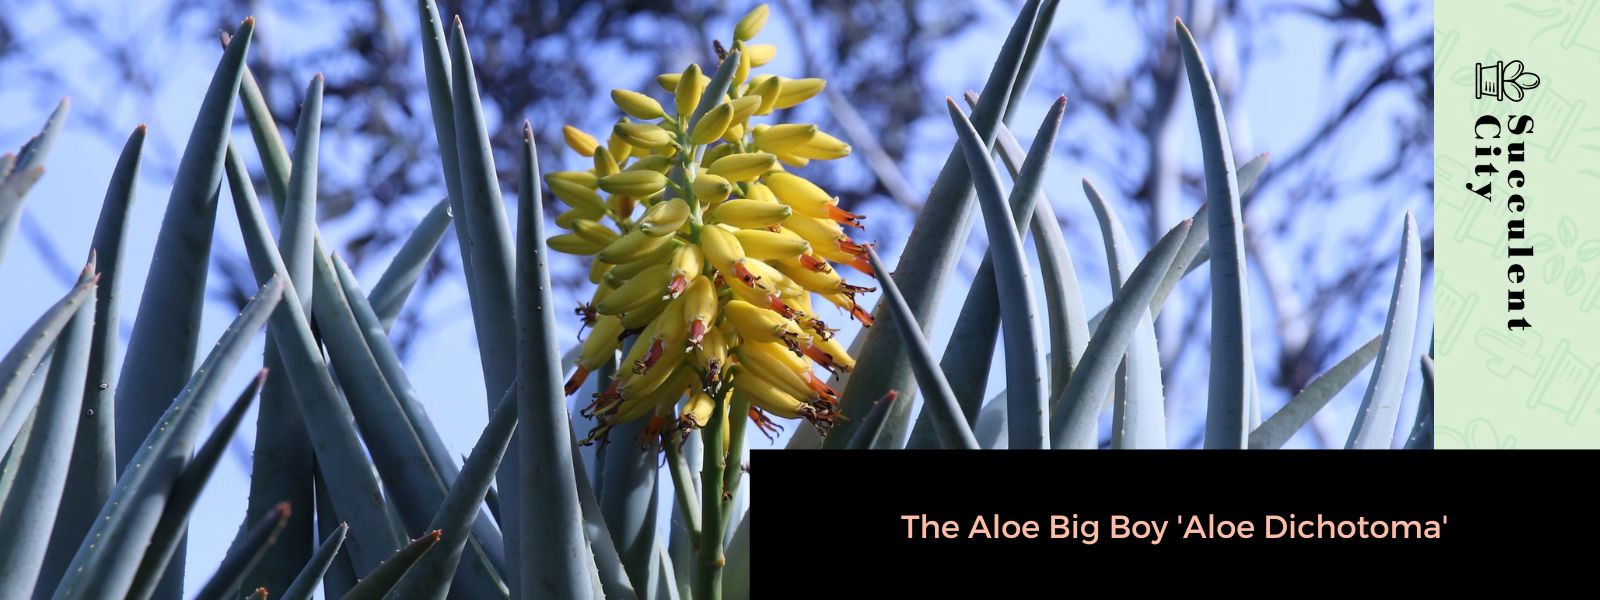 El gran chico del aloe 'Aloe dichotoma'